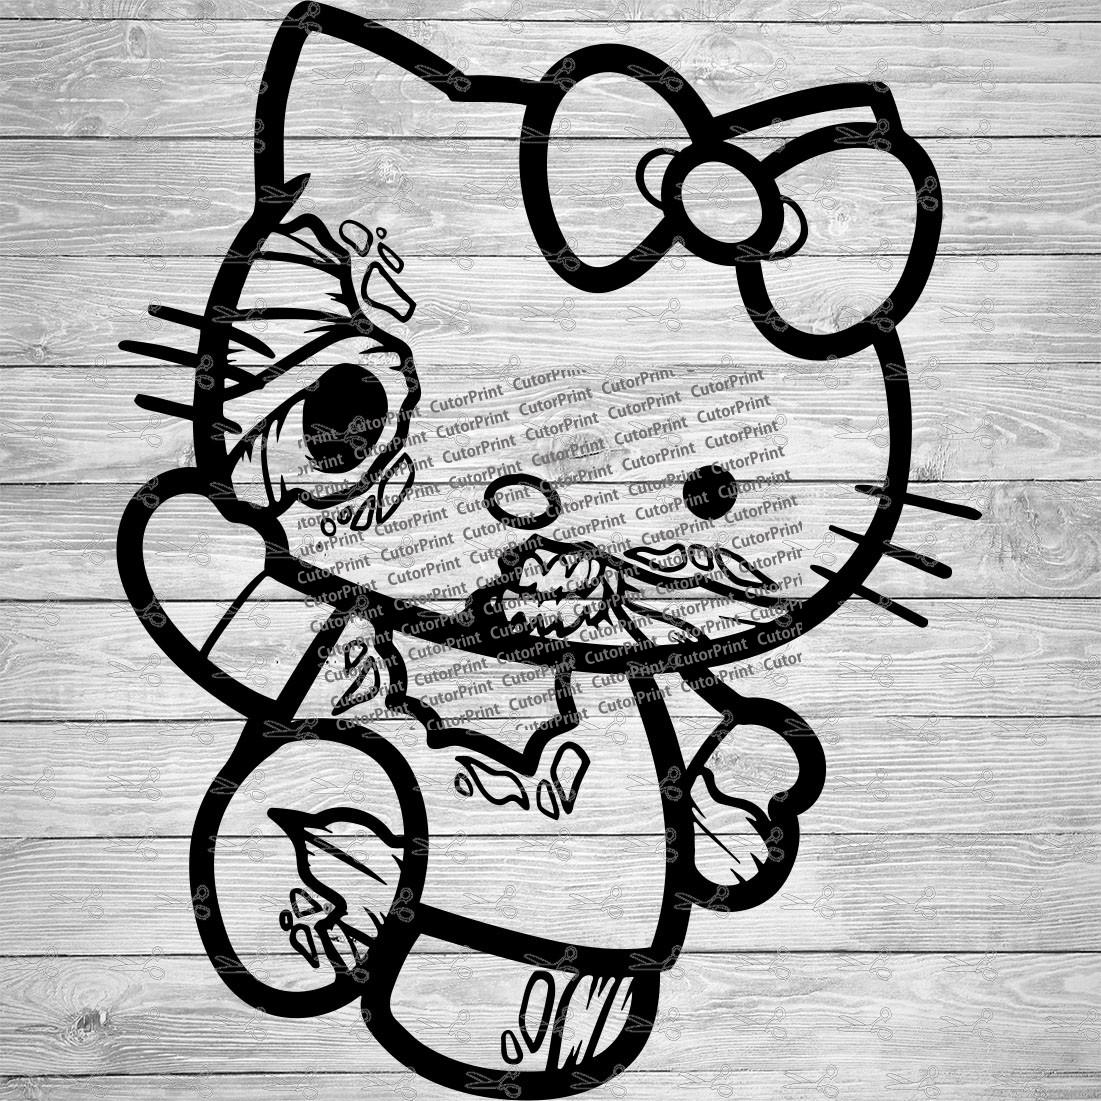 Zombie Hello Kitty - Hello Kitty - Dead Cute T-shirt - Free